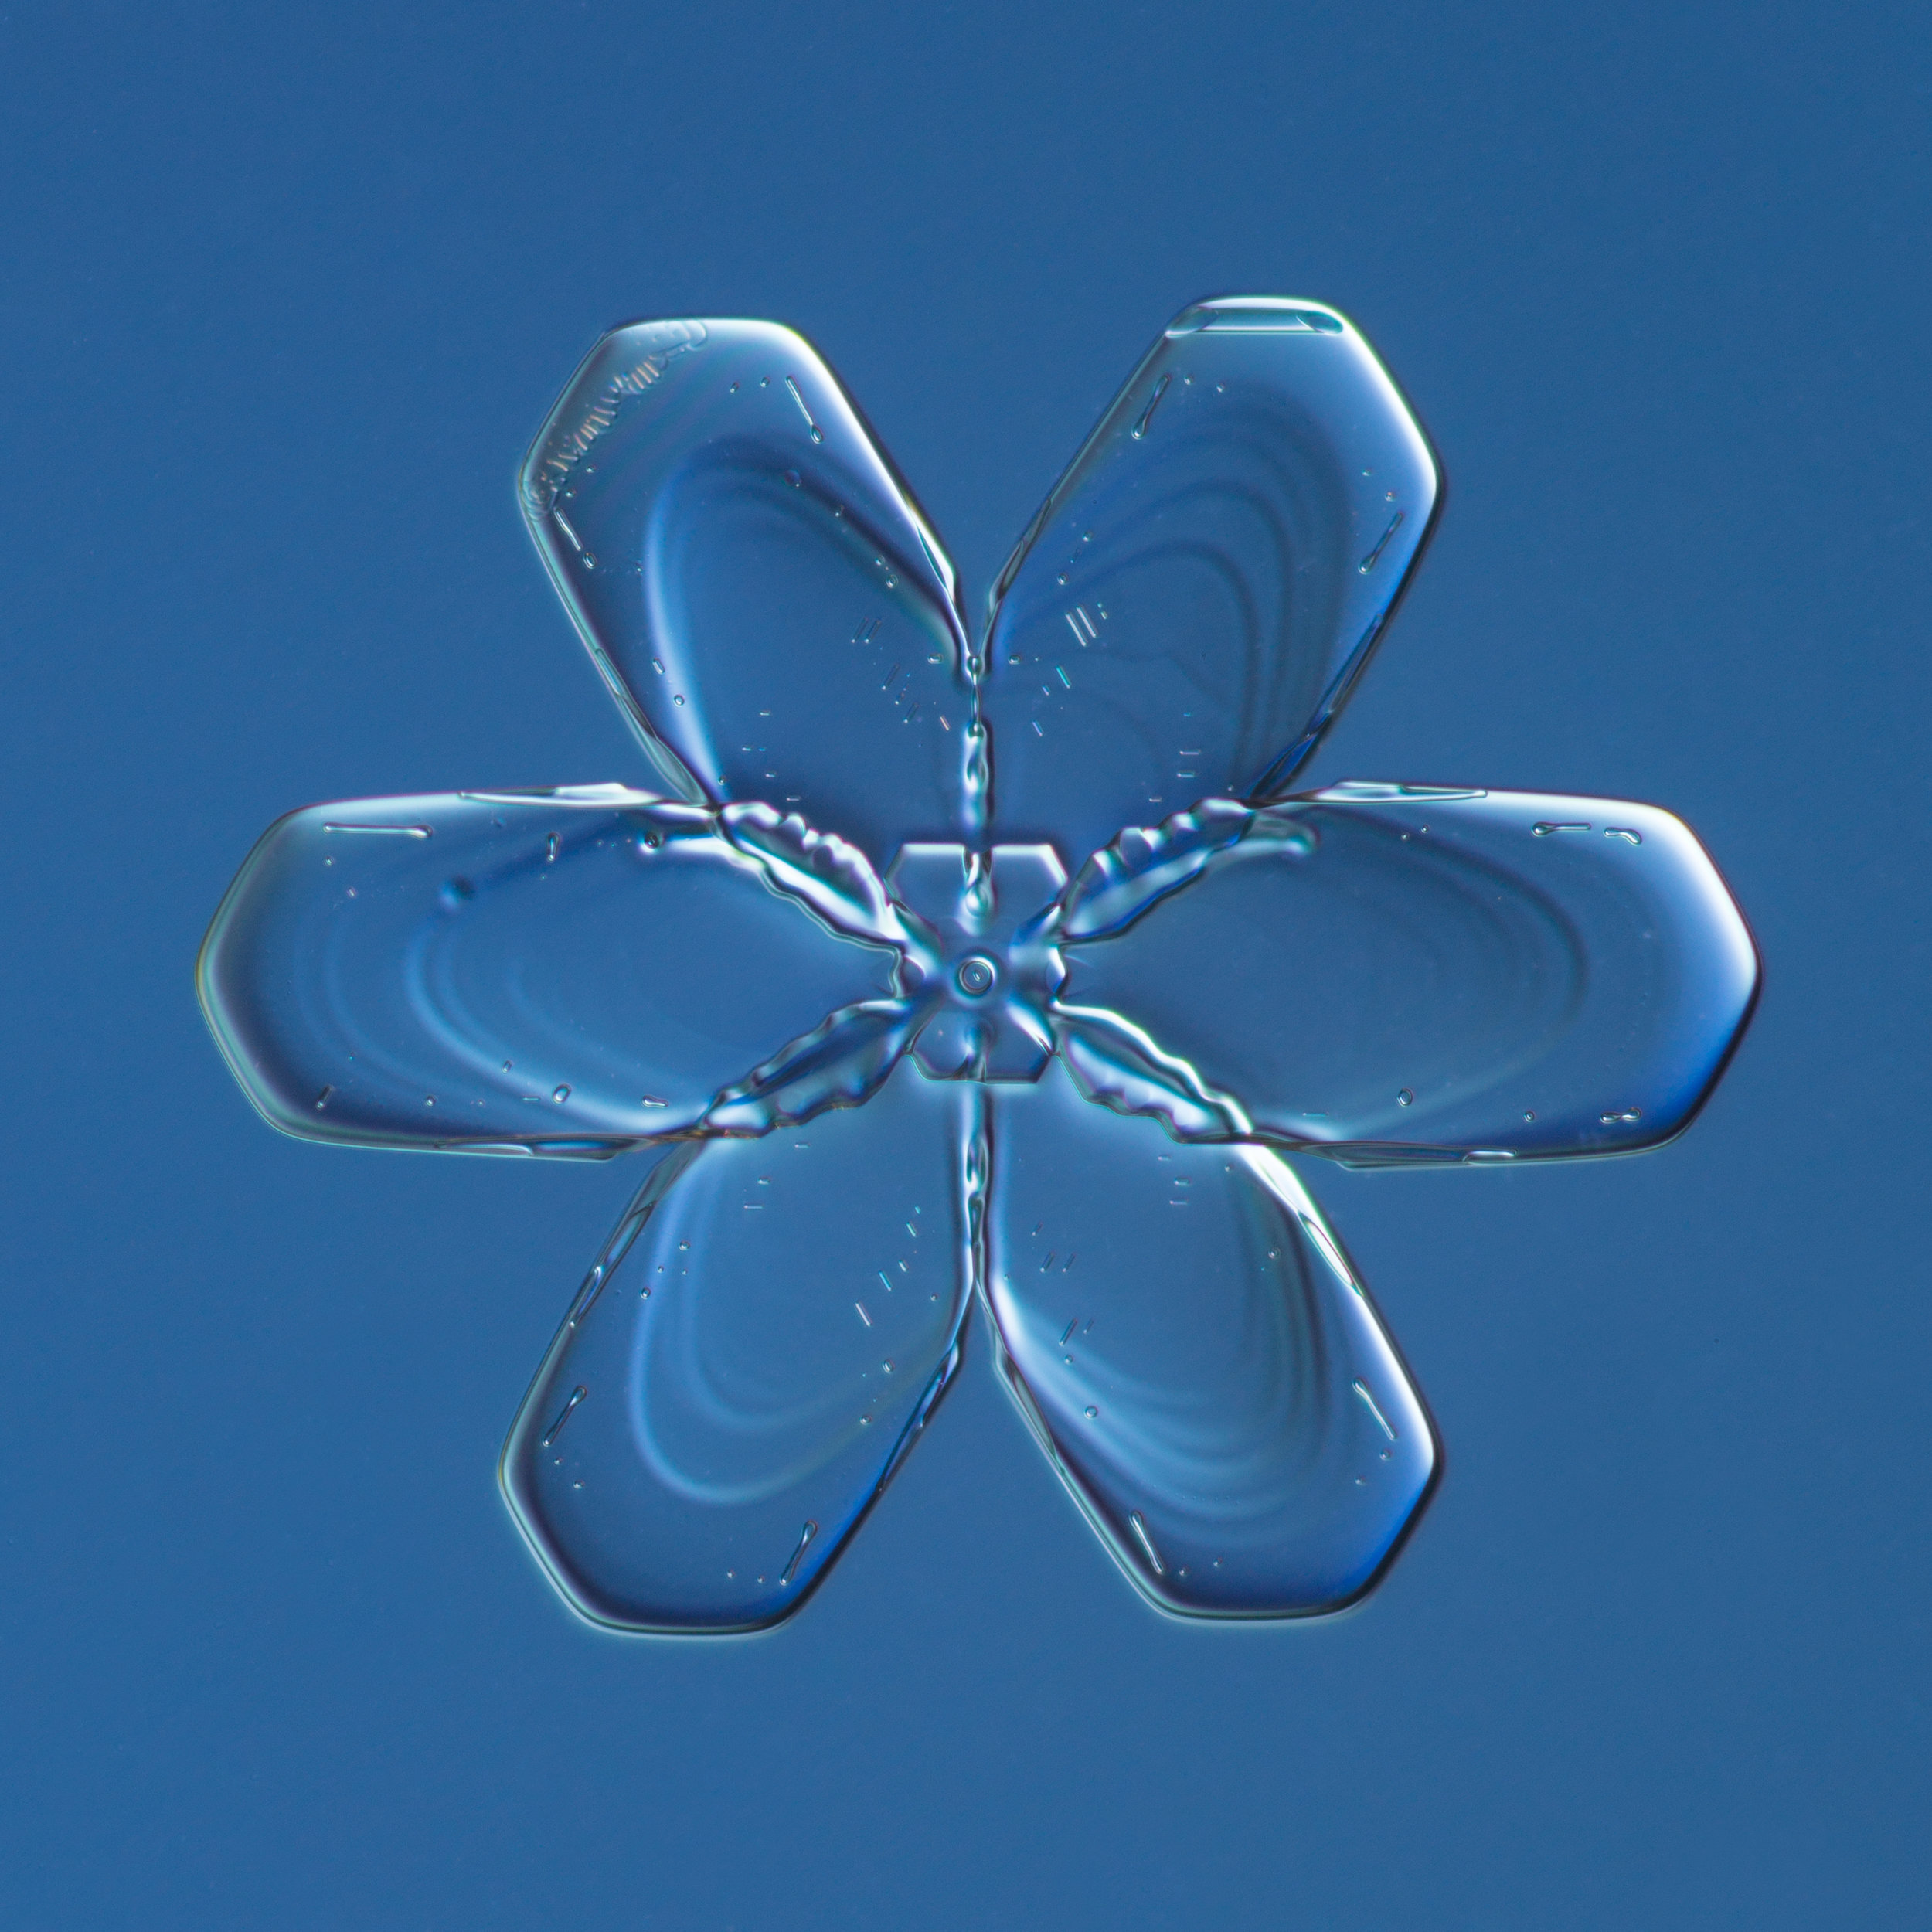 Snowflake 2015.02.21.001.JPG